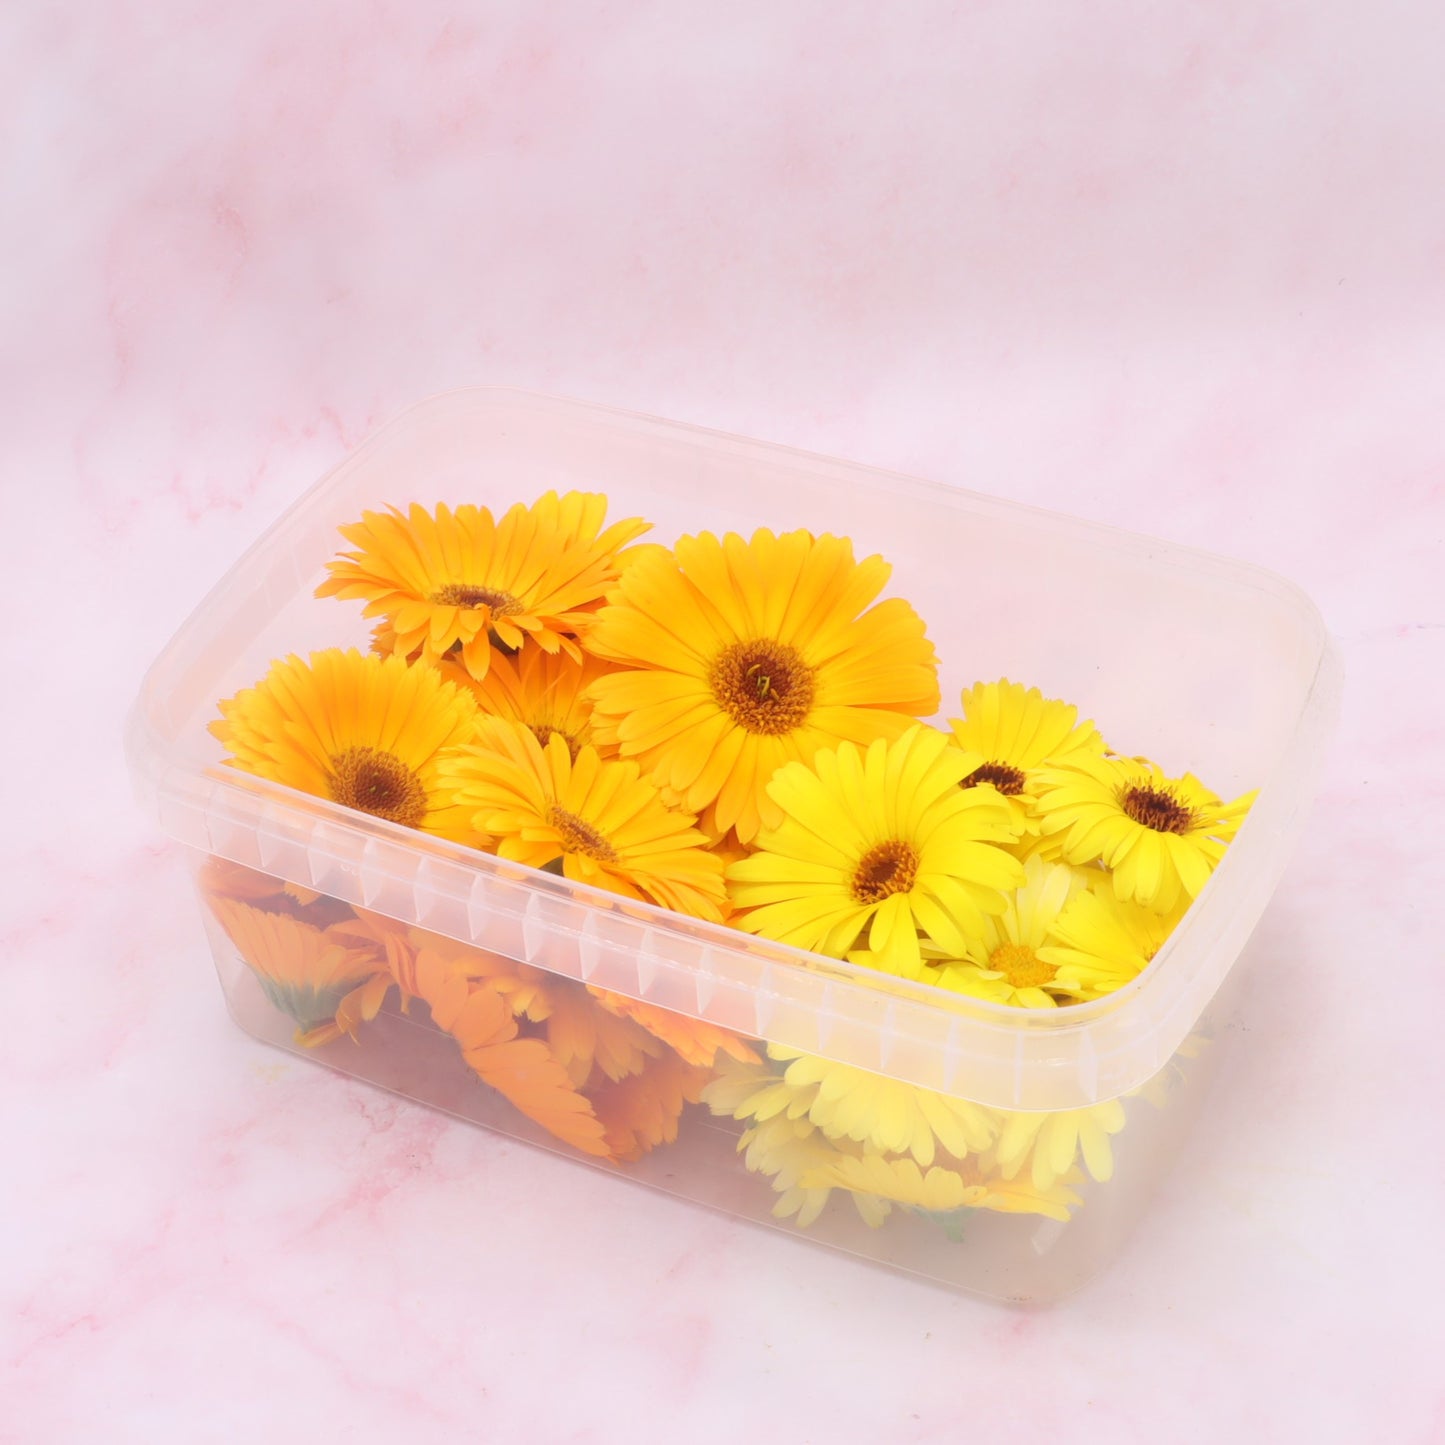 Grootverpakking goudsbloem gele en oranje eetbare bloemen Floral Delight